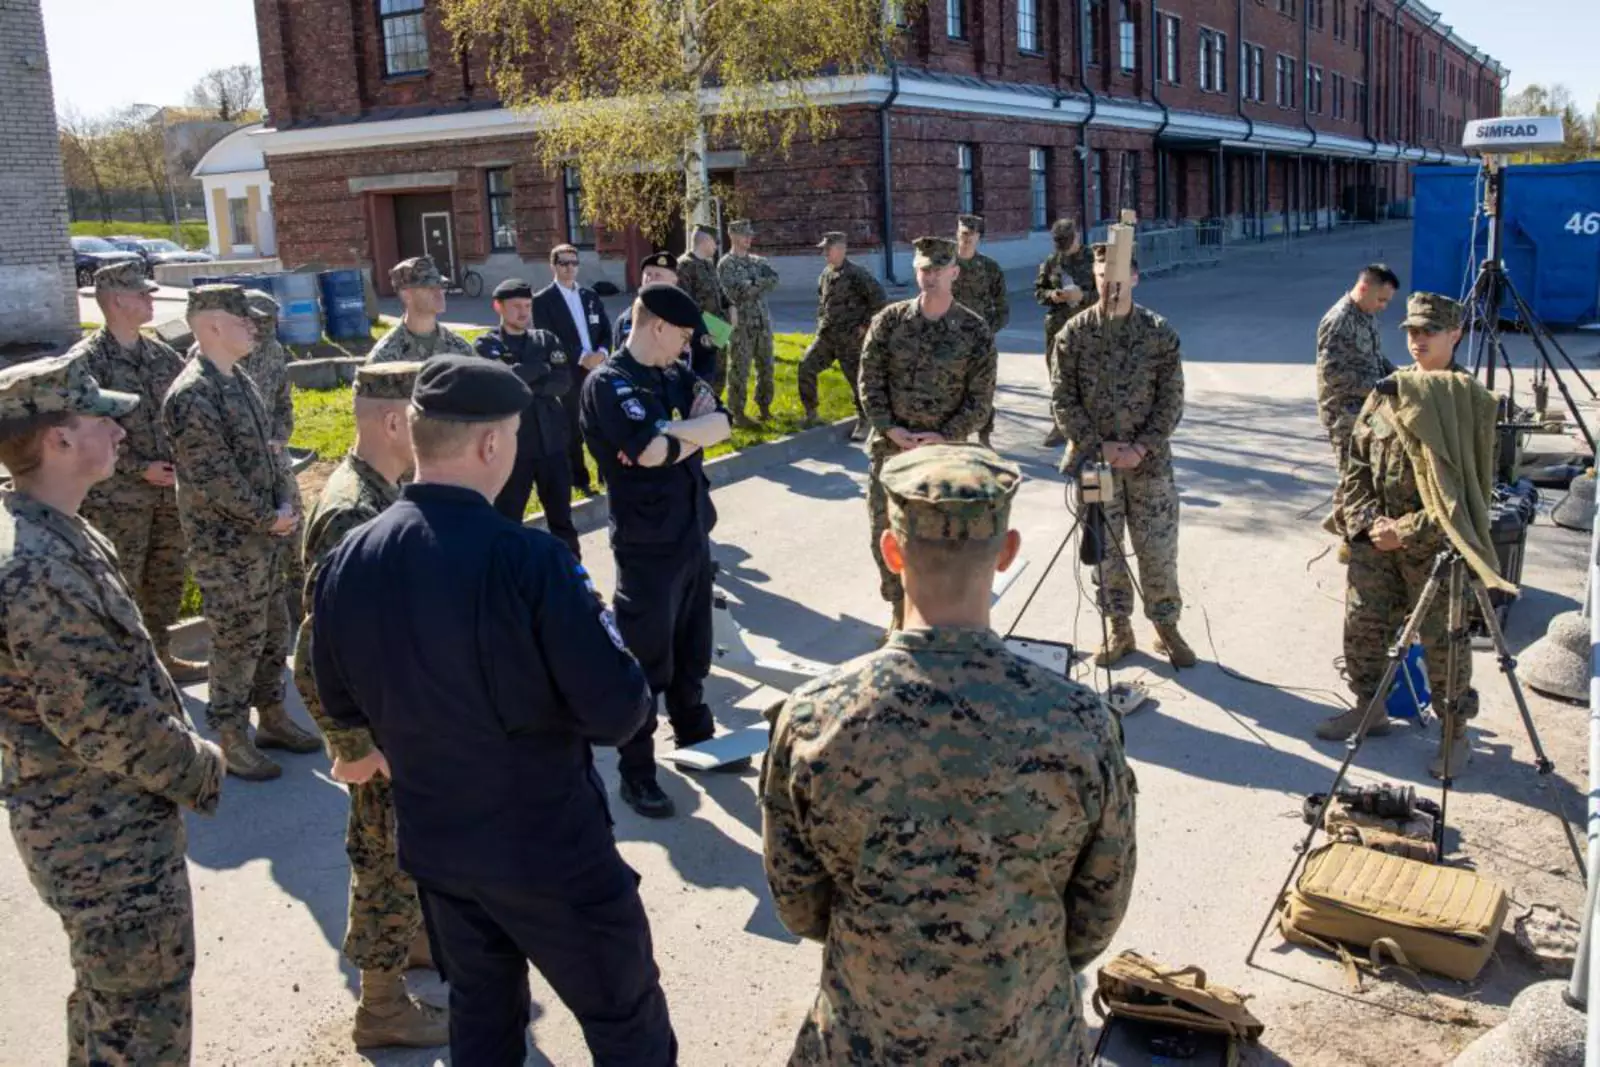 Морские пехотинцы, прикрепленные к оперативной группе 61/2, демонстрируют различное снаряжение и оборудование коммодору Юри Саске, командующему ВМС Эстонии, в рамках учений «Еж-22» недалеко от Таллинна (Эстония), 16 мая 2022 года.